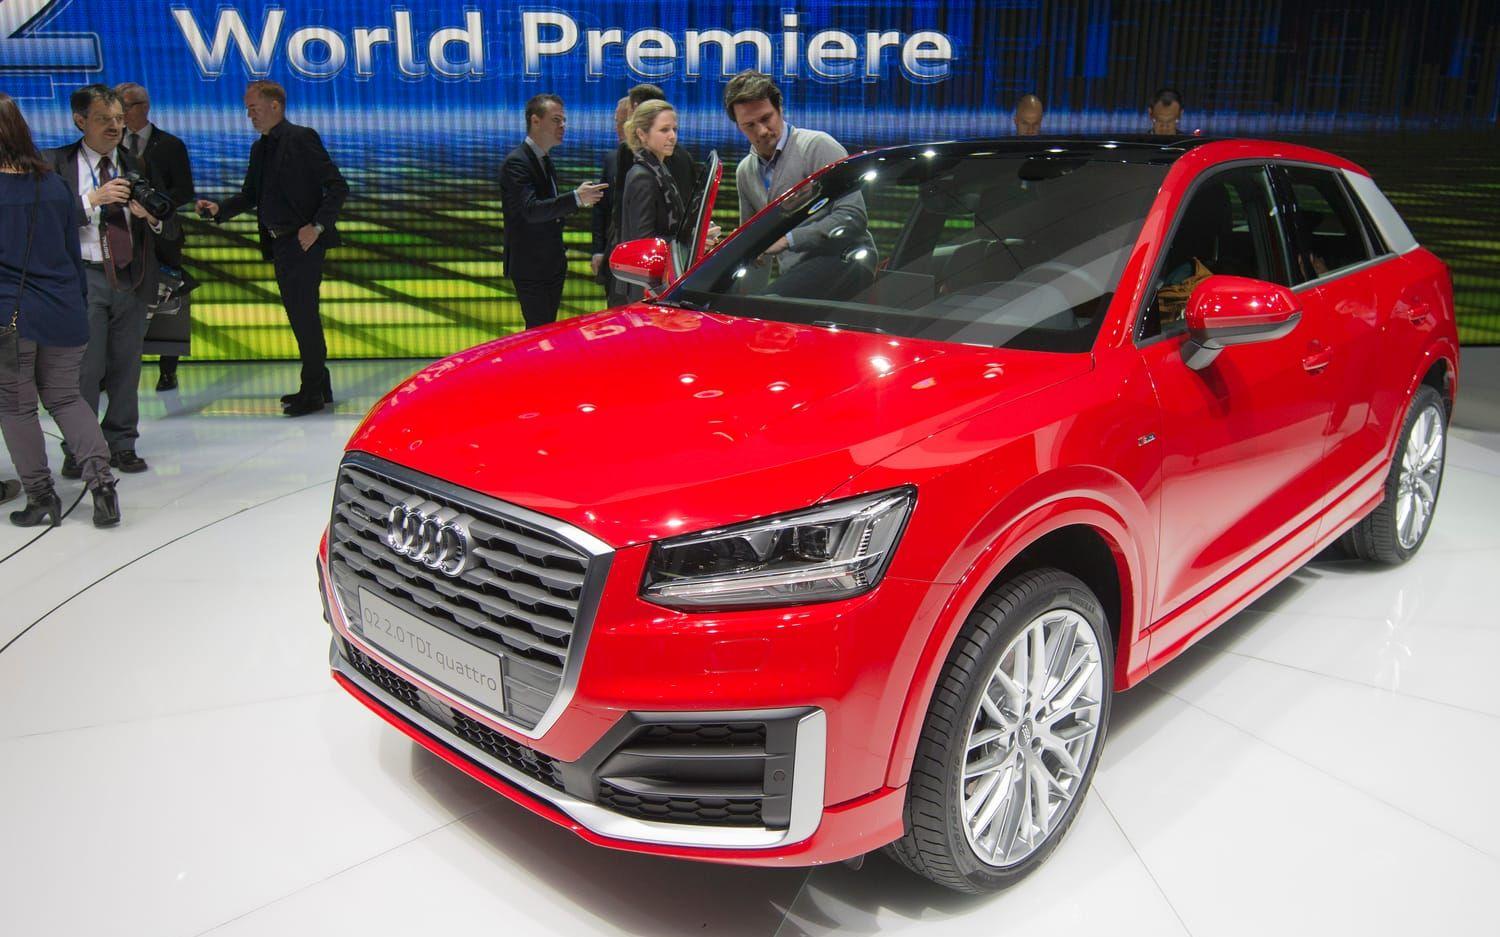 Audi presenterade den nya Q2-modellen i mars 2016. Bild: TT